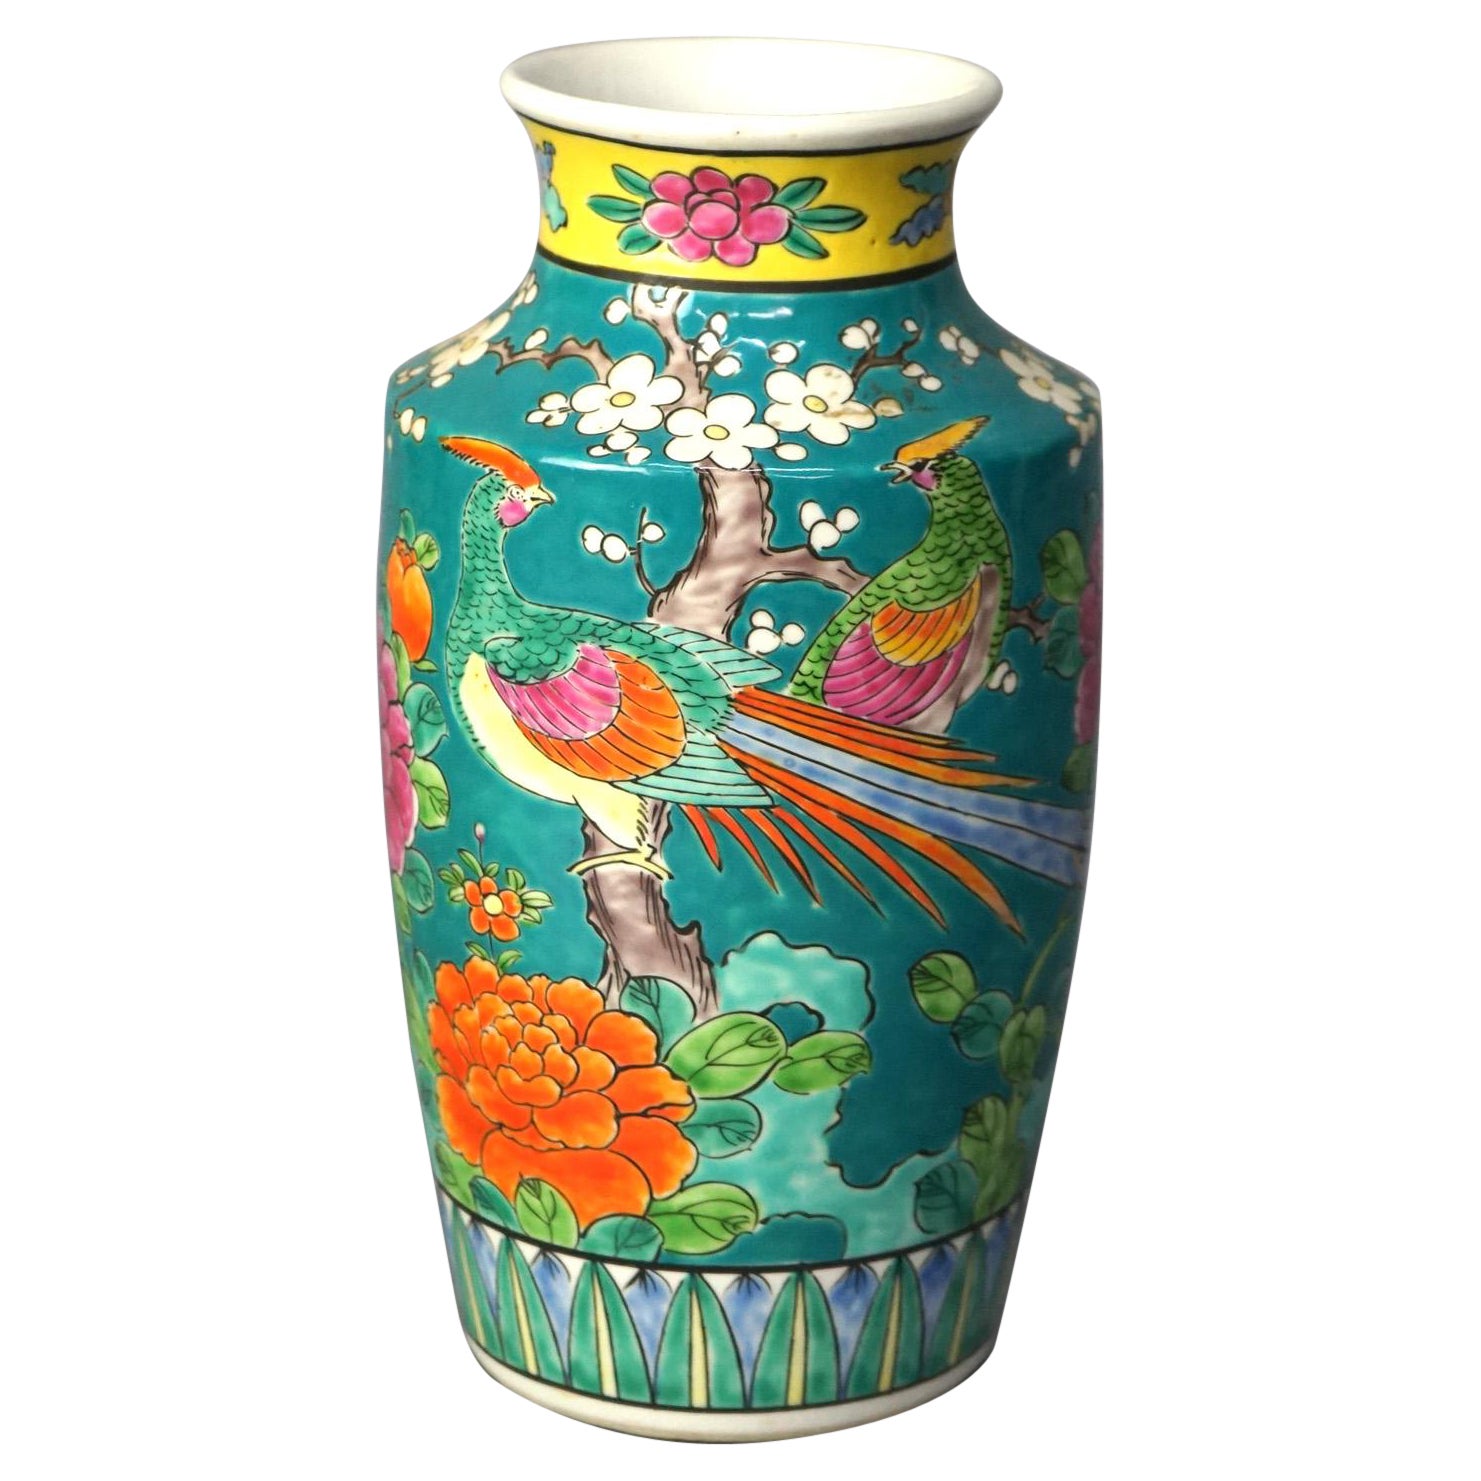 Antique Japanese Porcelain Enameled Garden Scene Vase with Birds & Flowers C1910